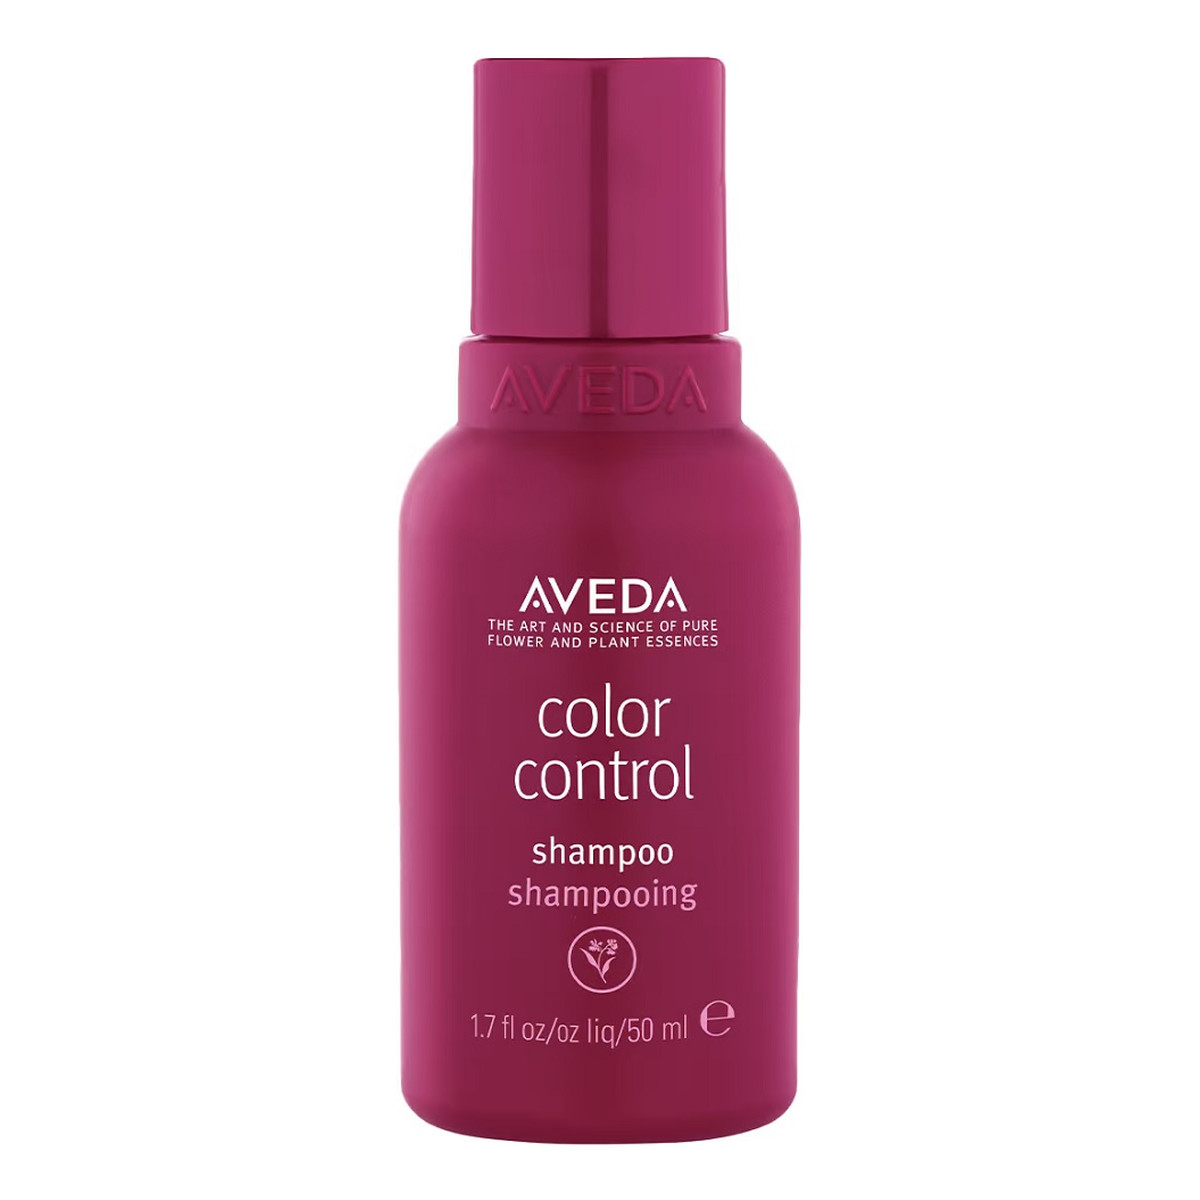 Aveda Color control shampoo delikatnie oczyszczający szampon do włosów farbowanych 50ml